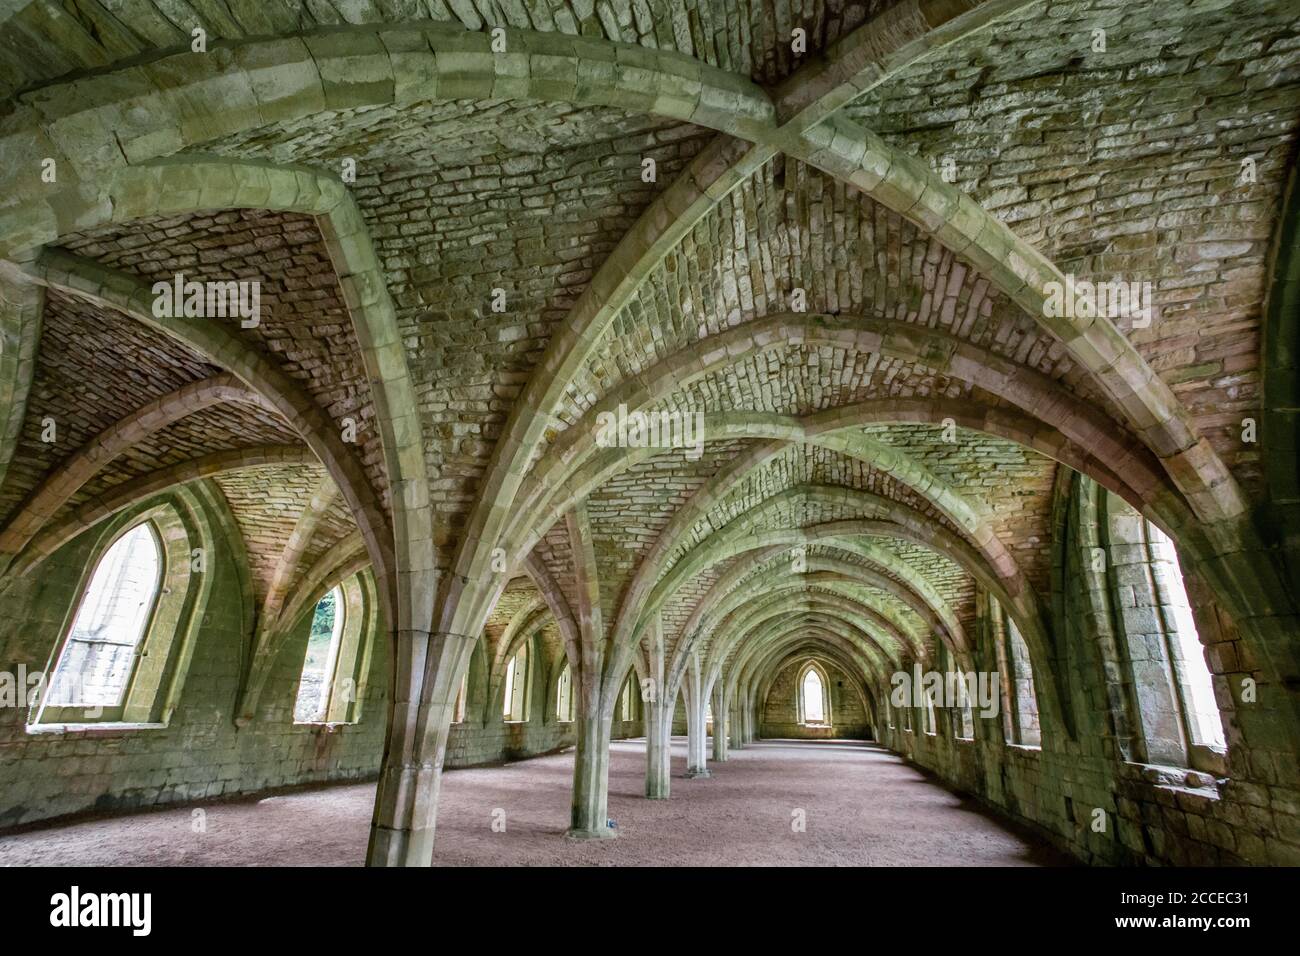 Les plafonds voûtés de l'abbaye de Fountains détruisaient le monastère cistercien, dans le Yorkshire, en Angleterre Banque D'Images